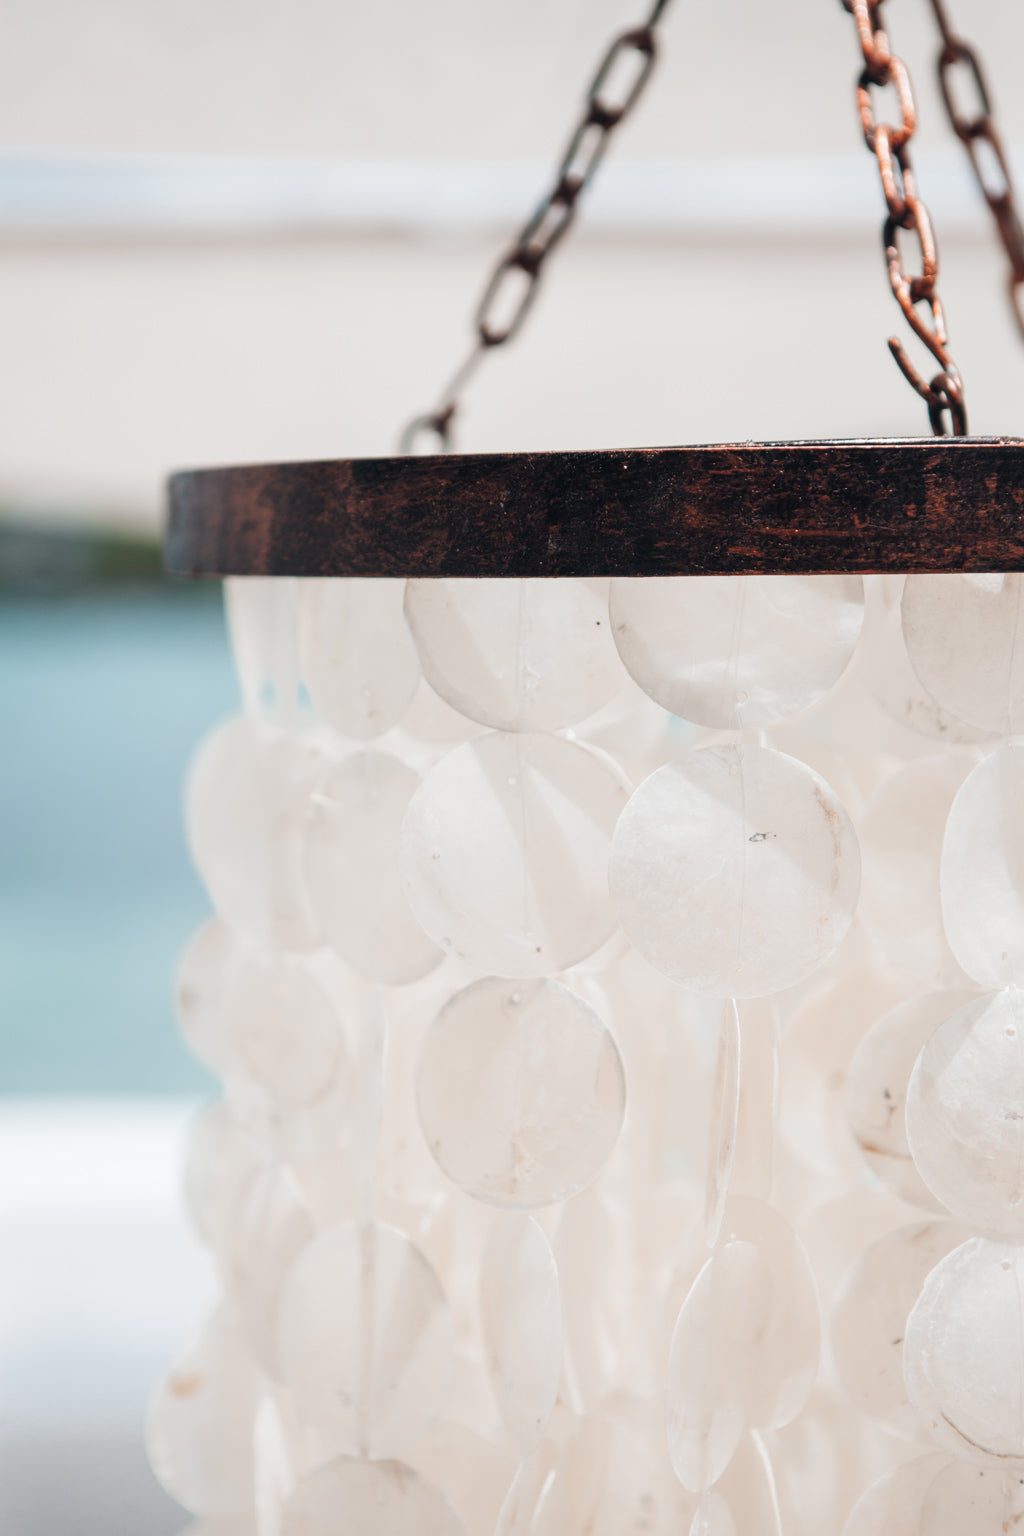 Capiz mother-of-pearl pendant chandelier